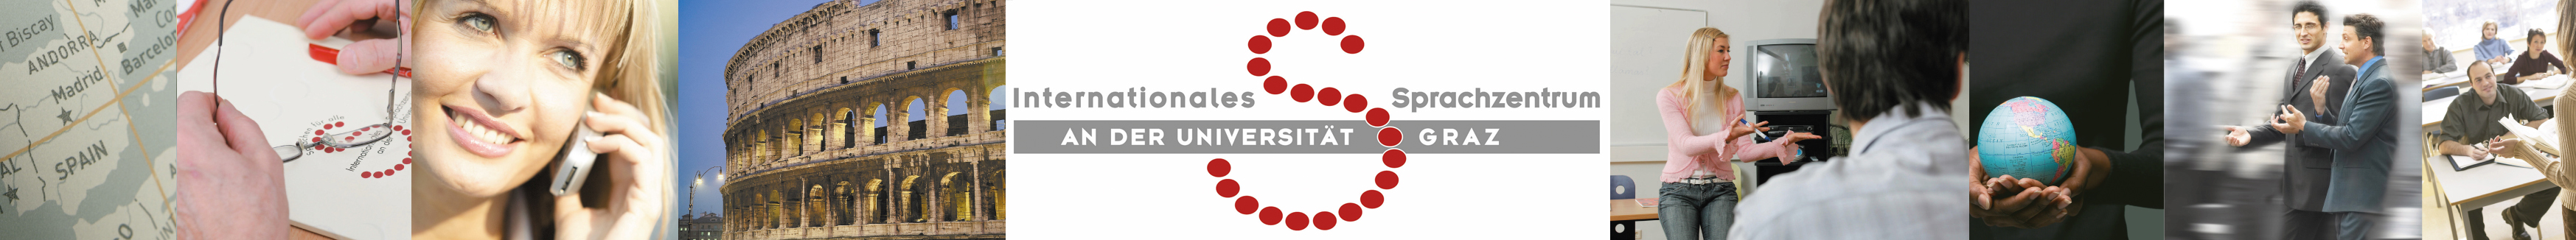 Internationales Sprachzentrum an der Universität Graz